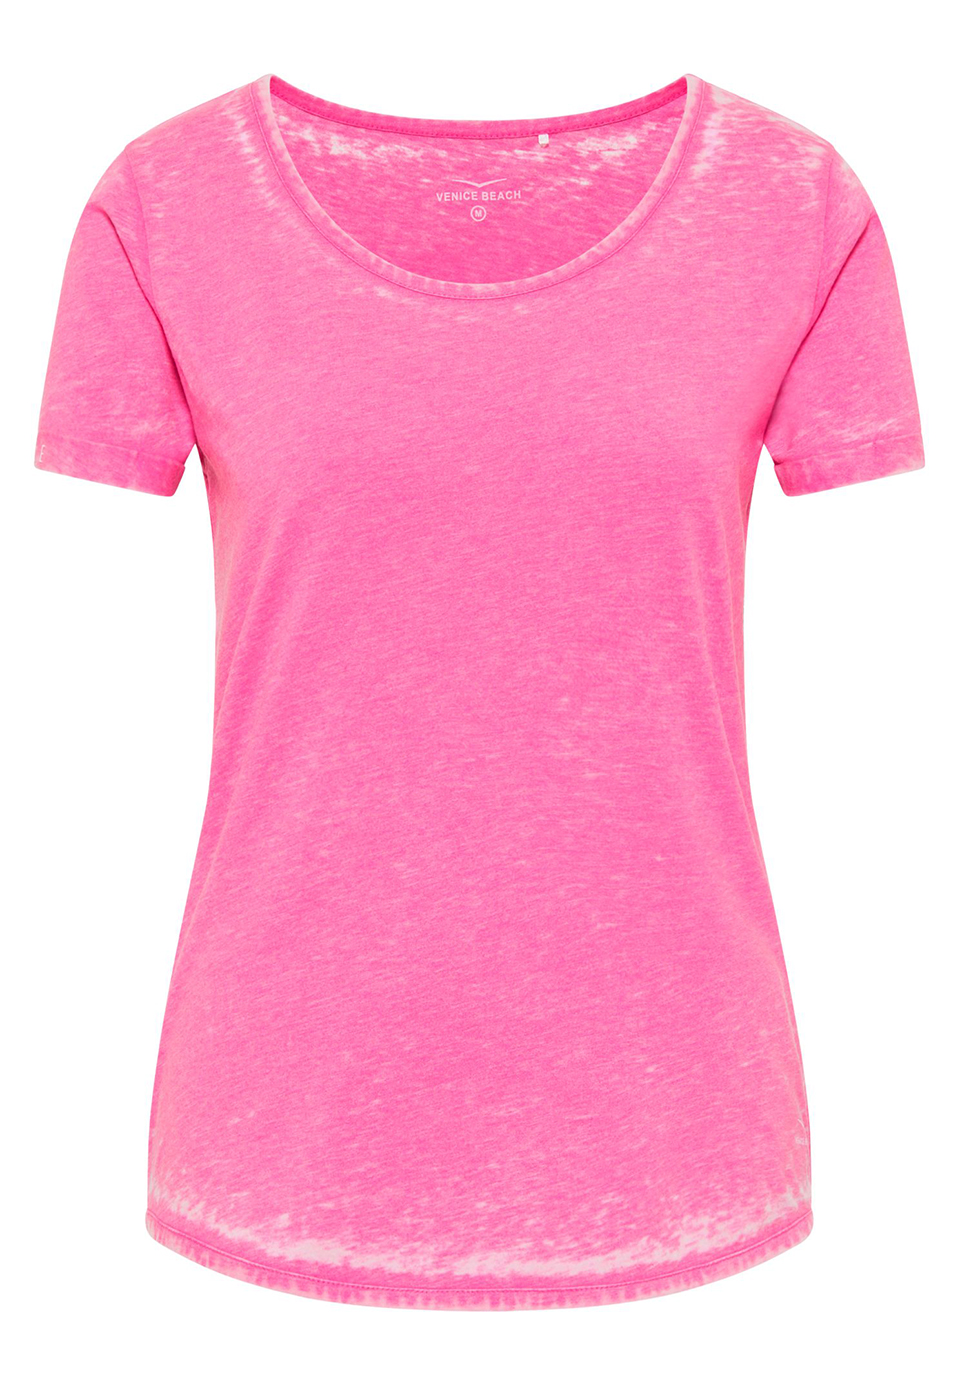 Venice Bach Damen FAYZA T-Shirt Casual Shirt im Ausbrenner-Look 15937 pink